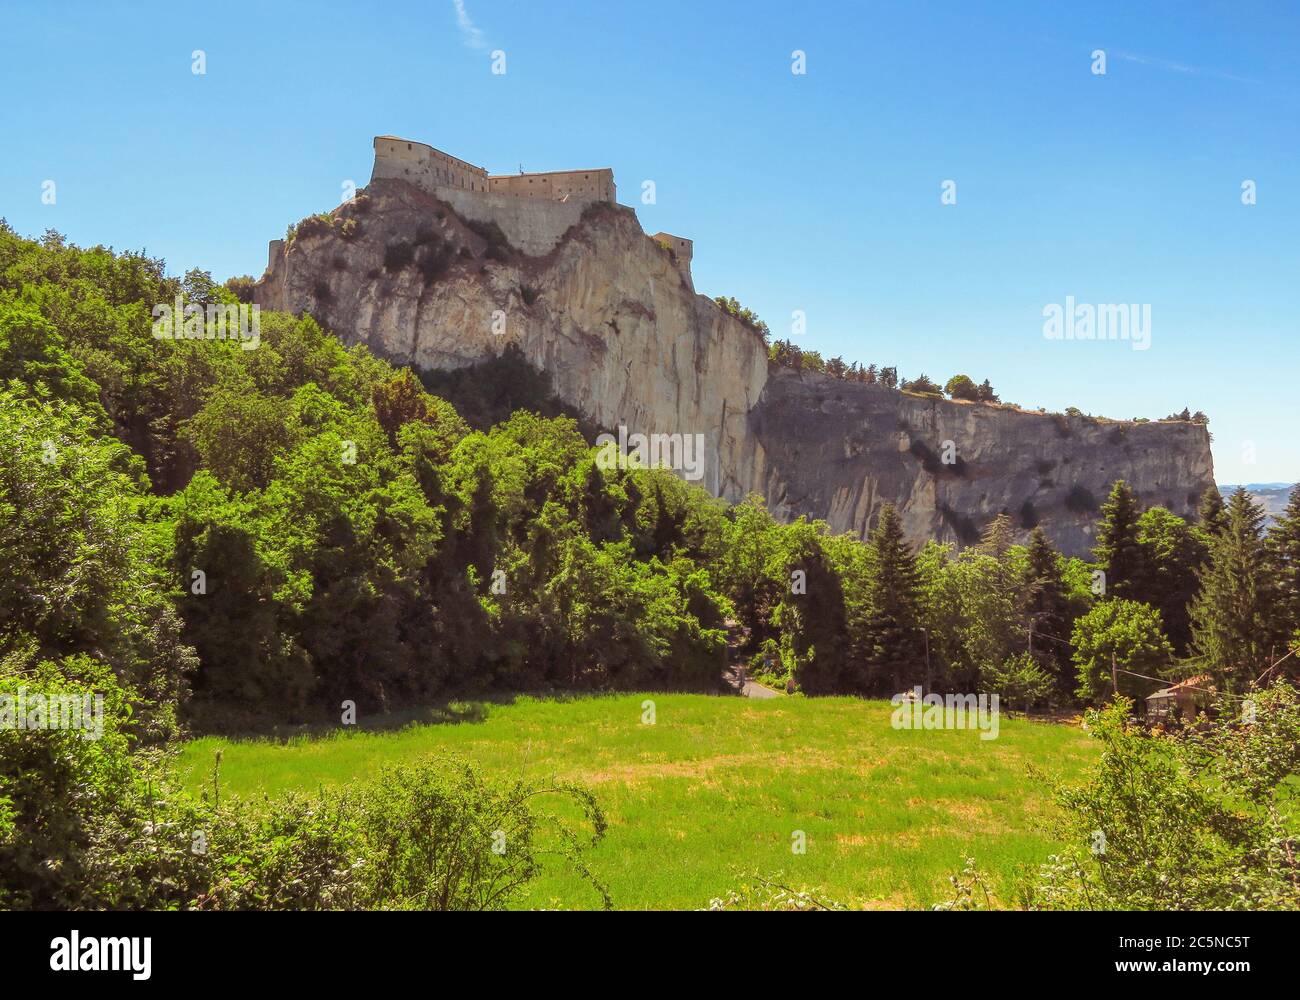 La Fortezza rinascimentale di San Leo, situata su una scogliera rocciosa, risale al XV secolo Foto Stock